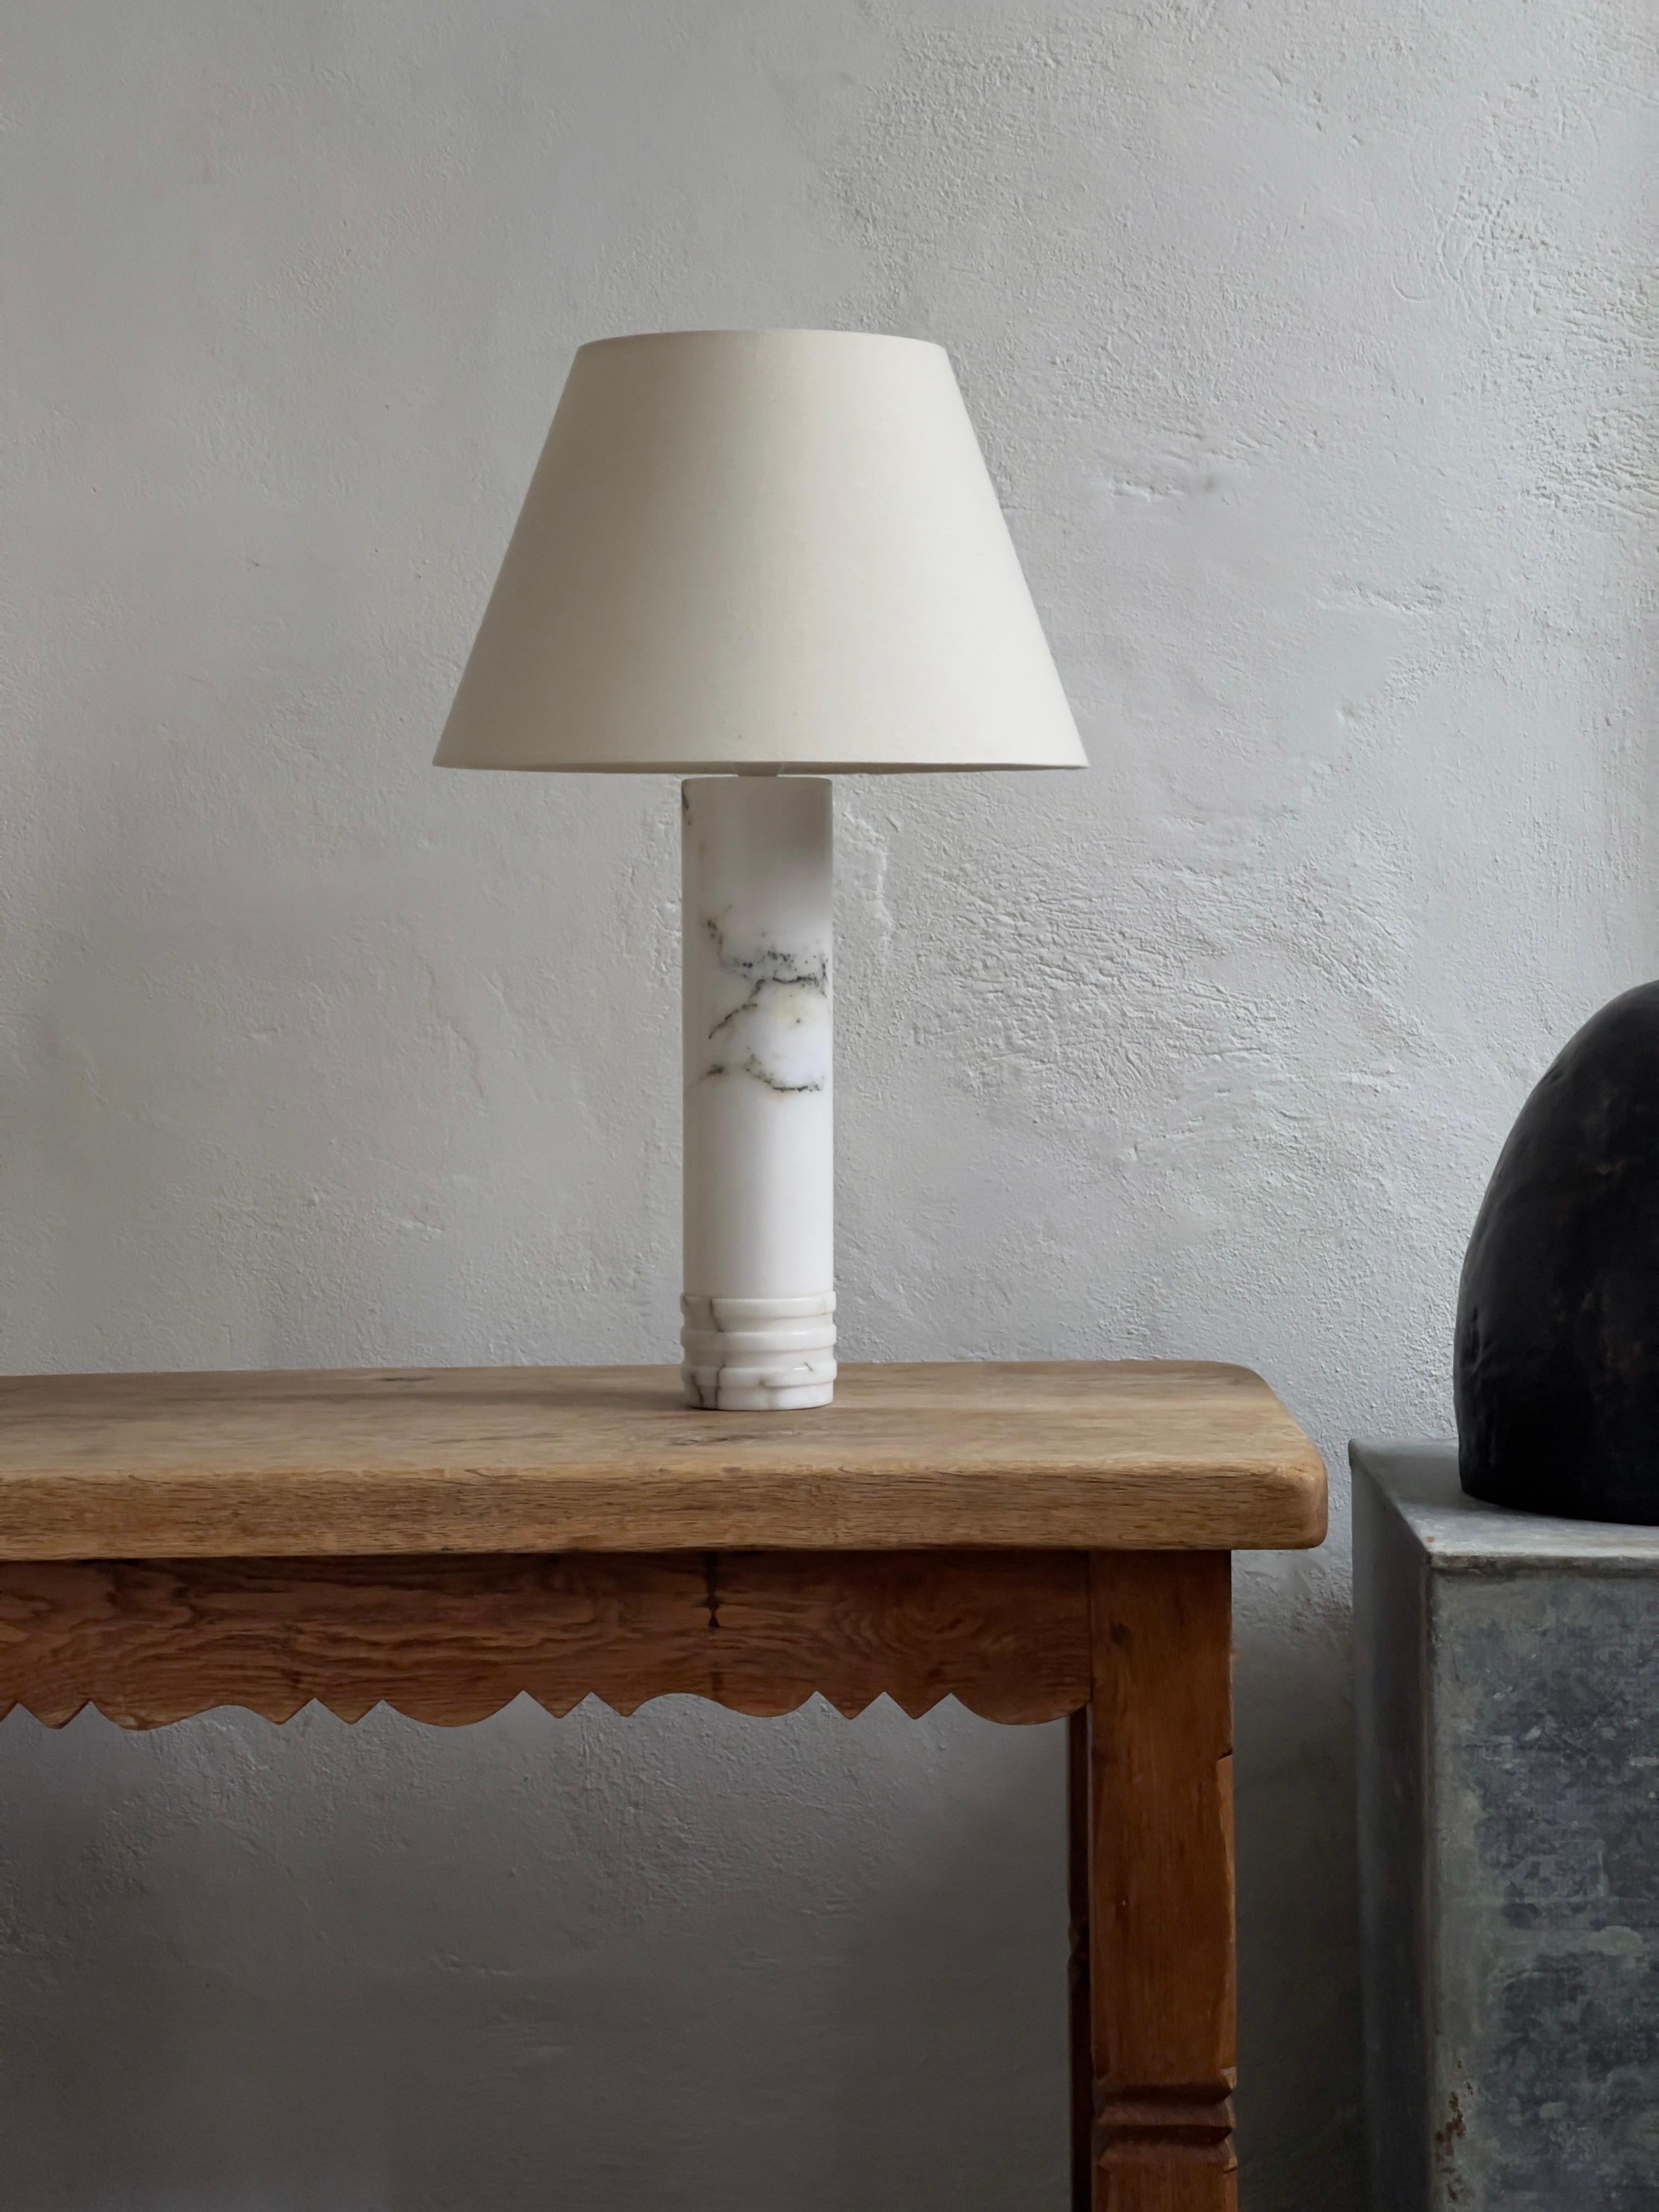 Ein Paar schwedische moderne Tischlampen aus massivem Marmor aus den 1960er Jahren in sehr gutem Zustand. Hergestellt von Bergboms in Schweden. Modell B-10. Eine Einzellampe ist ebenfalls erhältlich, siehe Angebot. 
Abmessungen: (ohne Schirm):